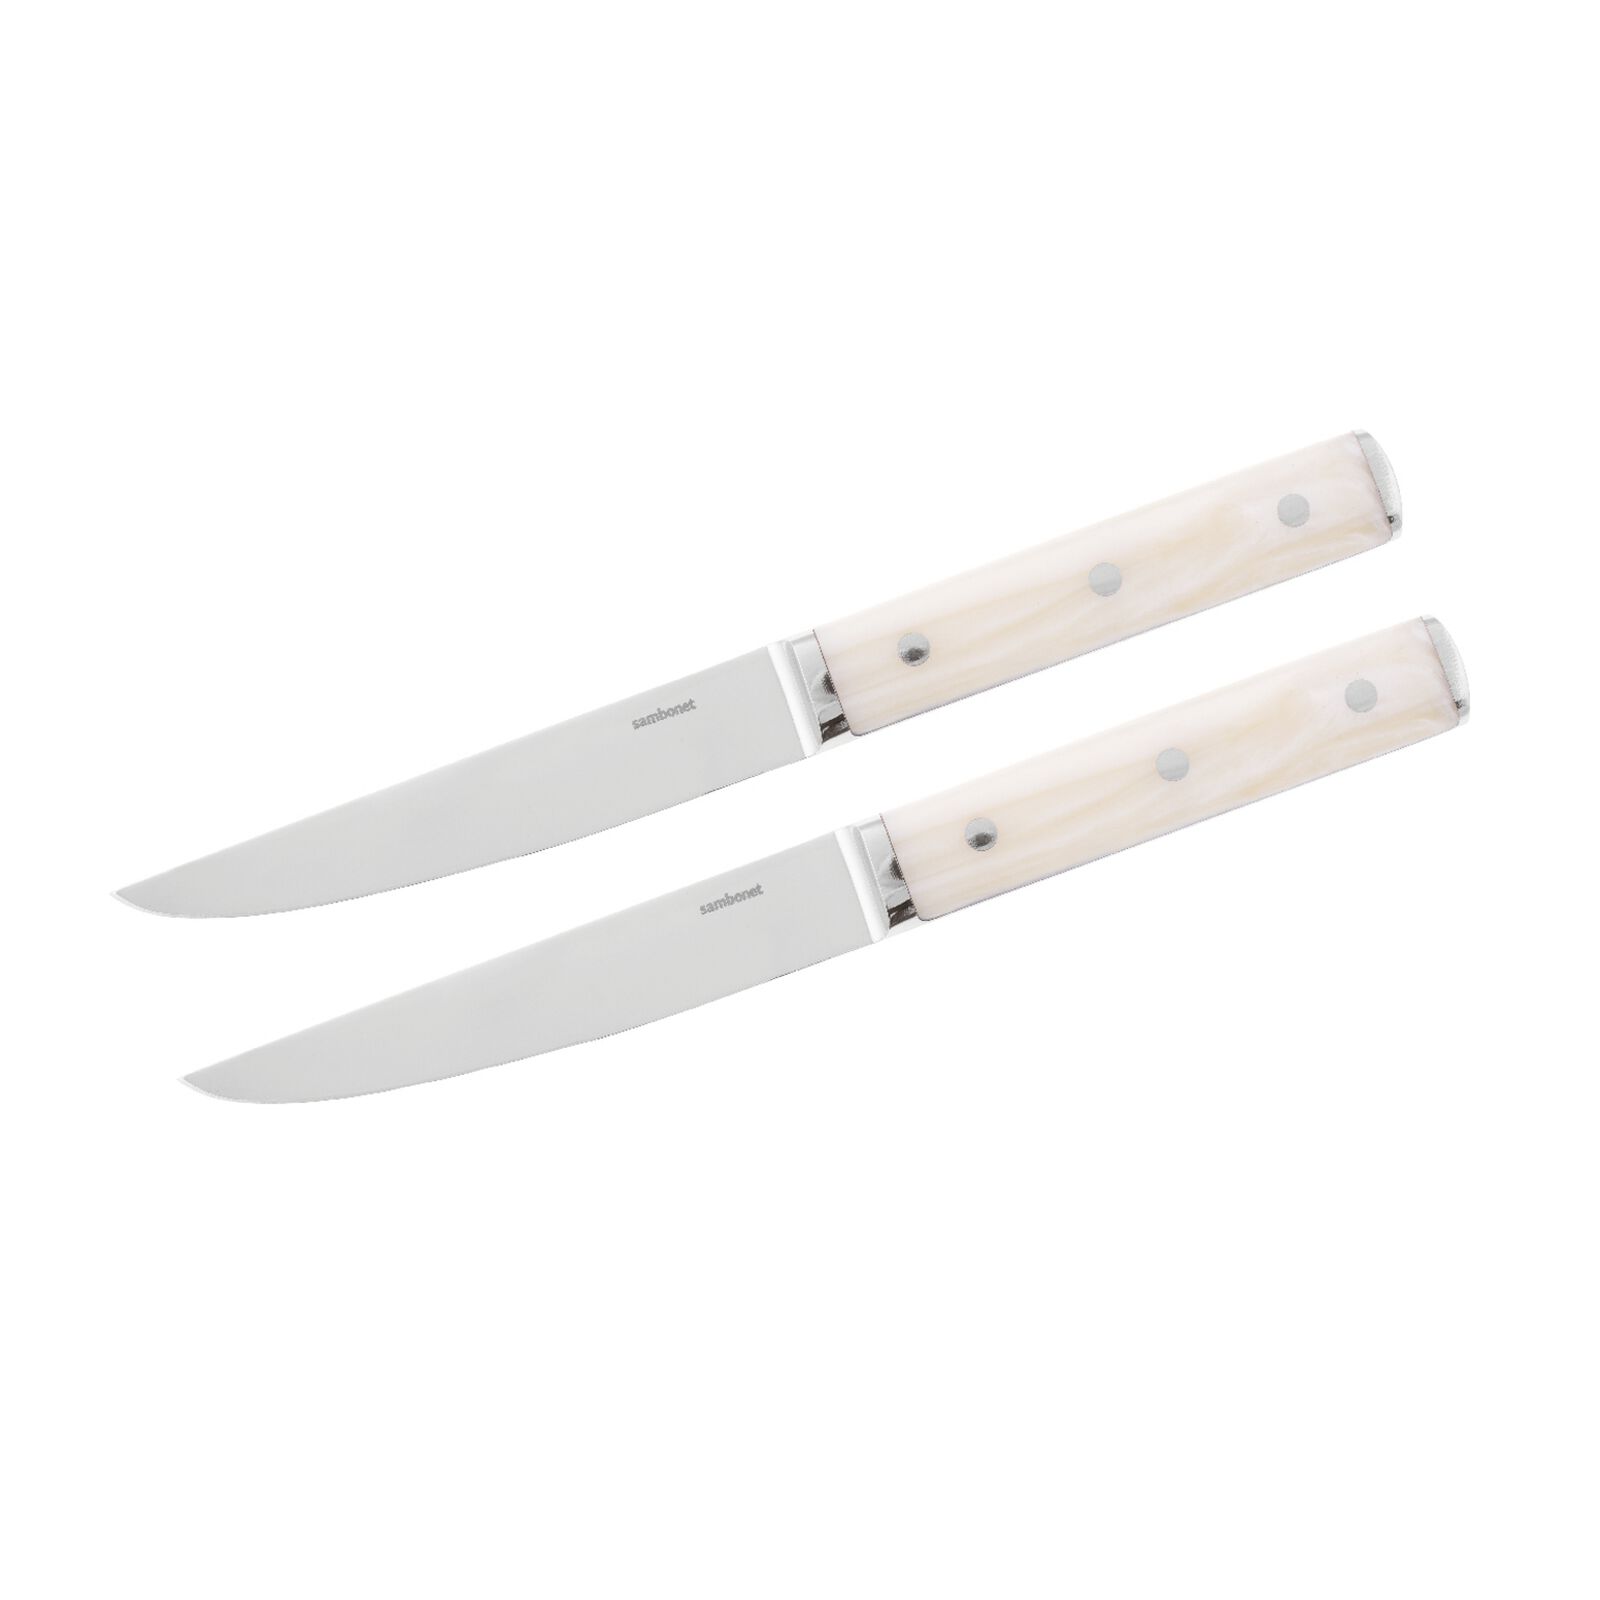 Sambonet Knives White Steak Knife, 4 3/4 - The Pink Daisy